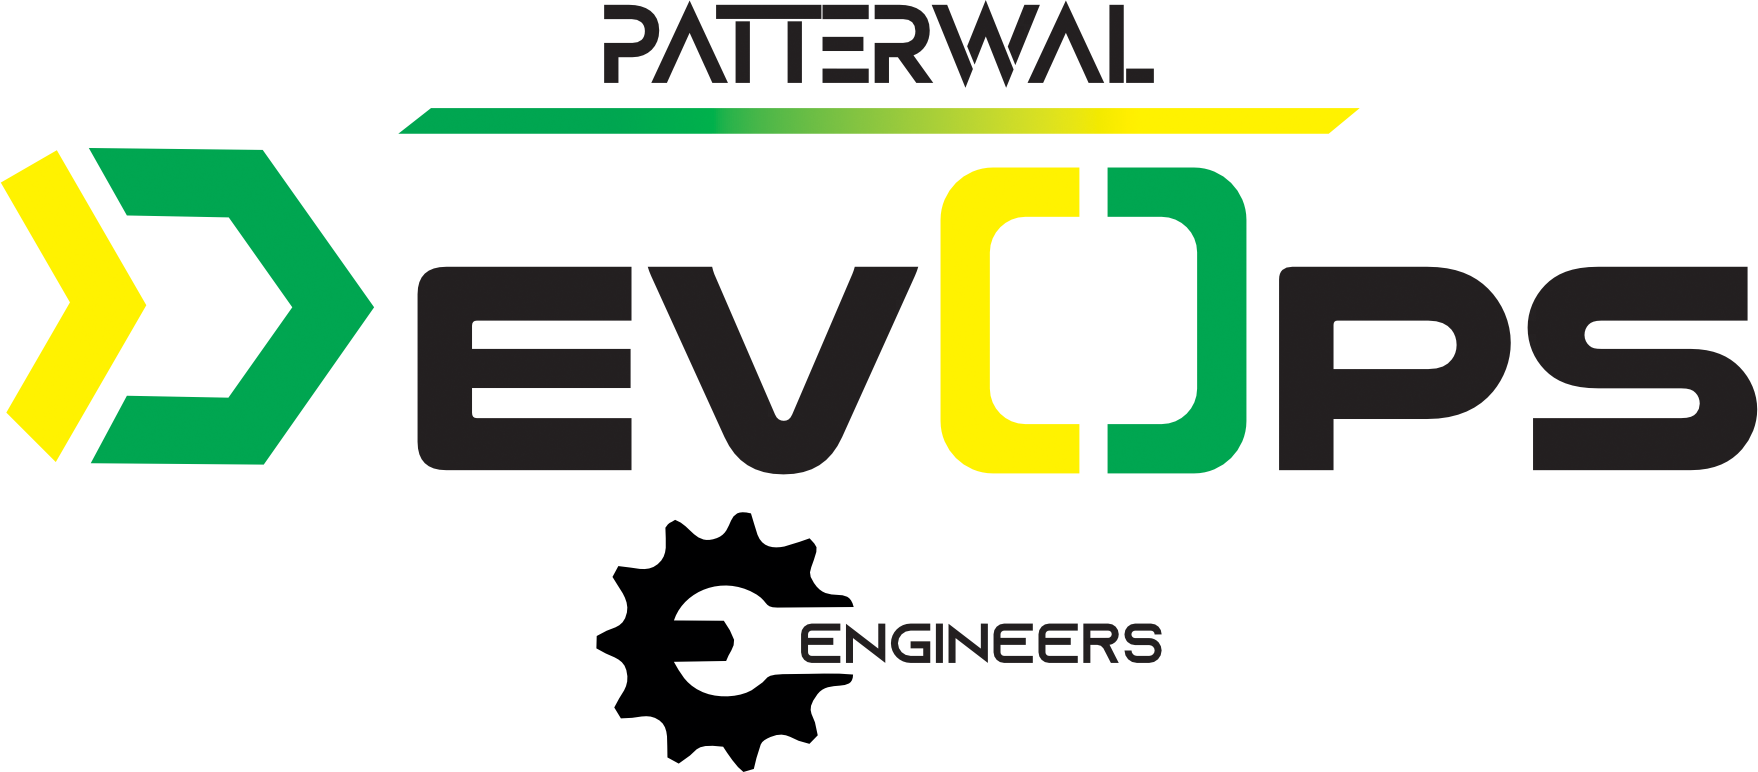 Patterwal DevOps Engineers